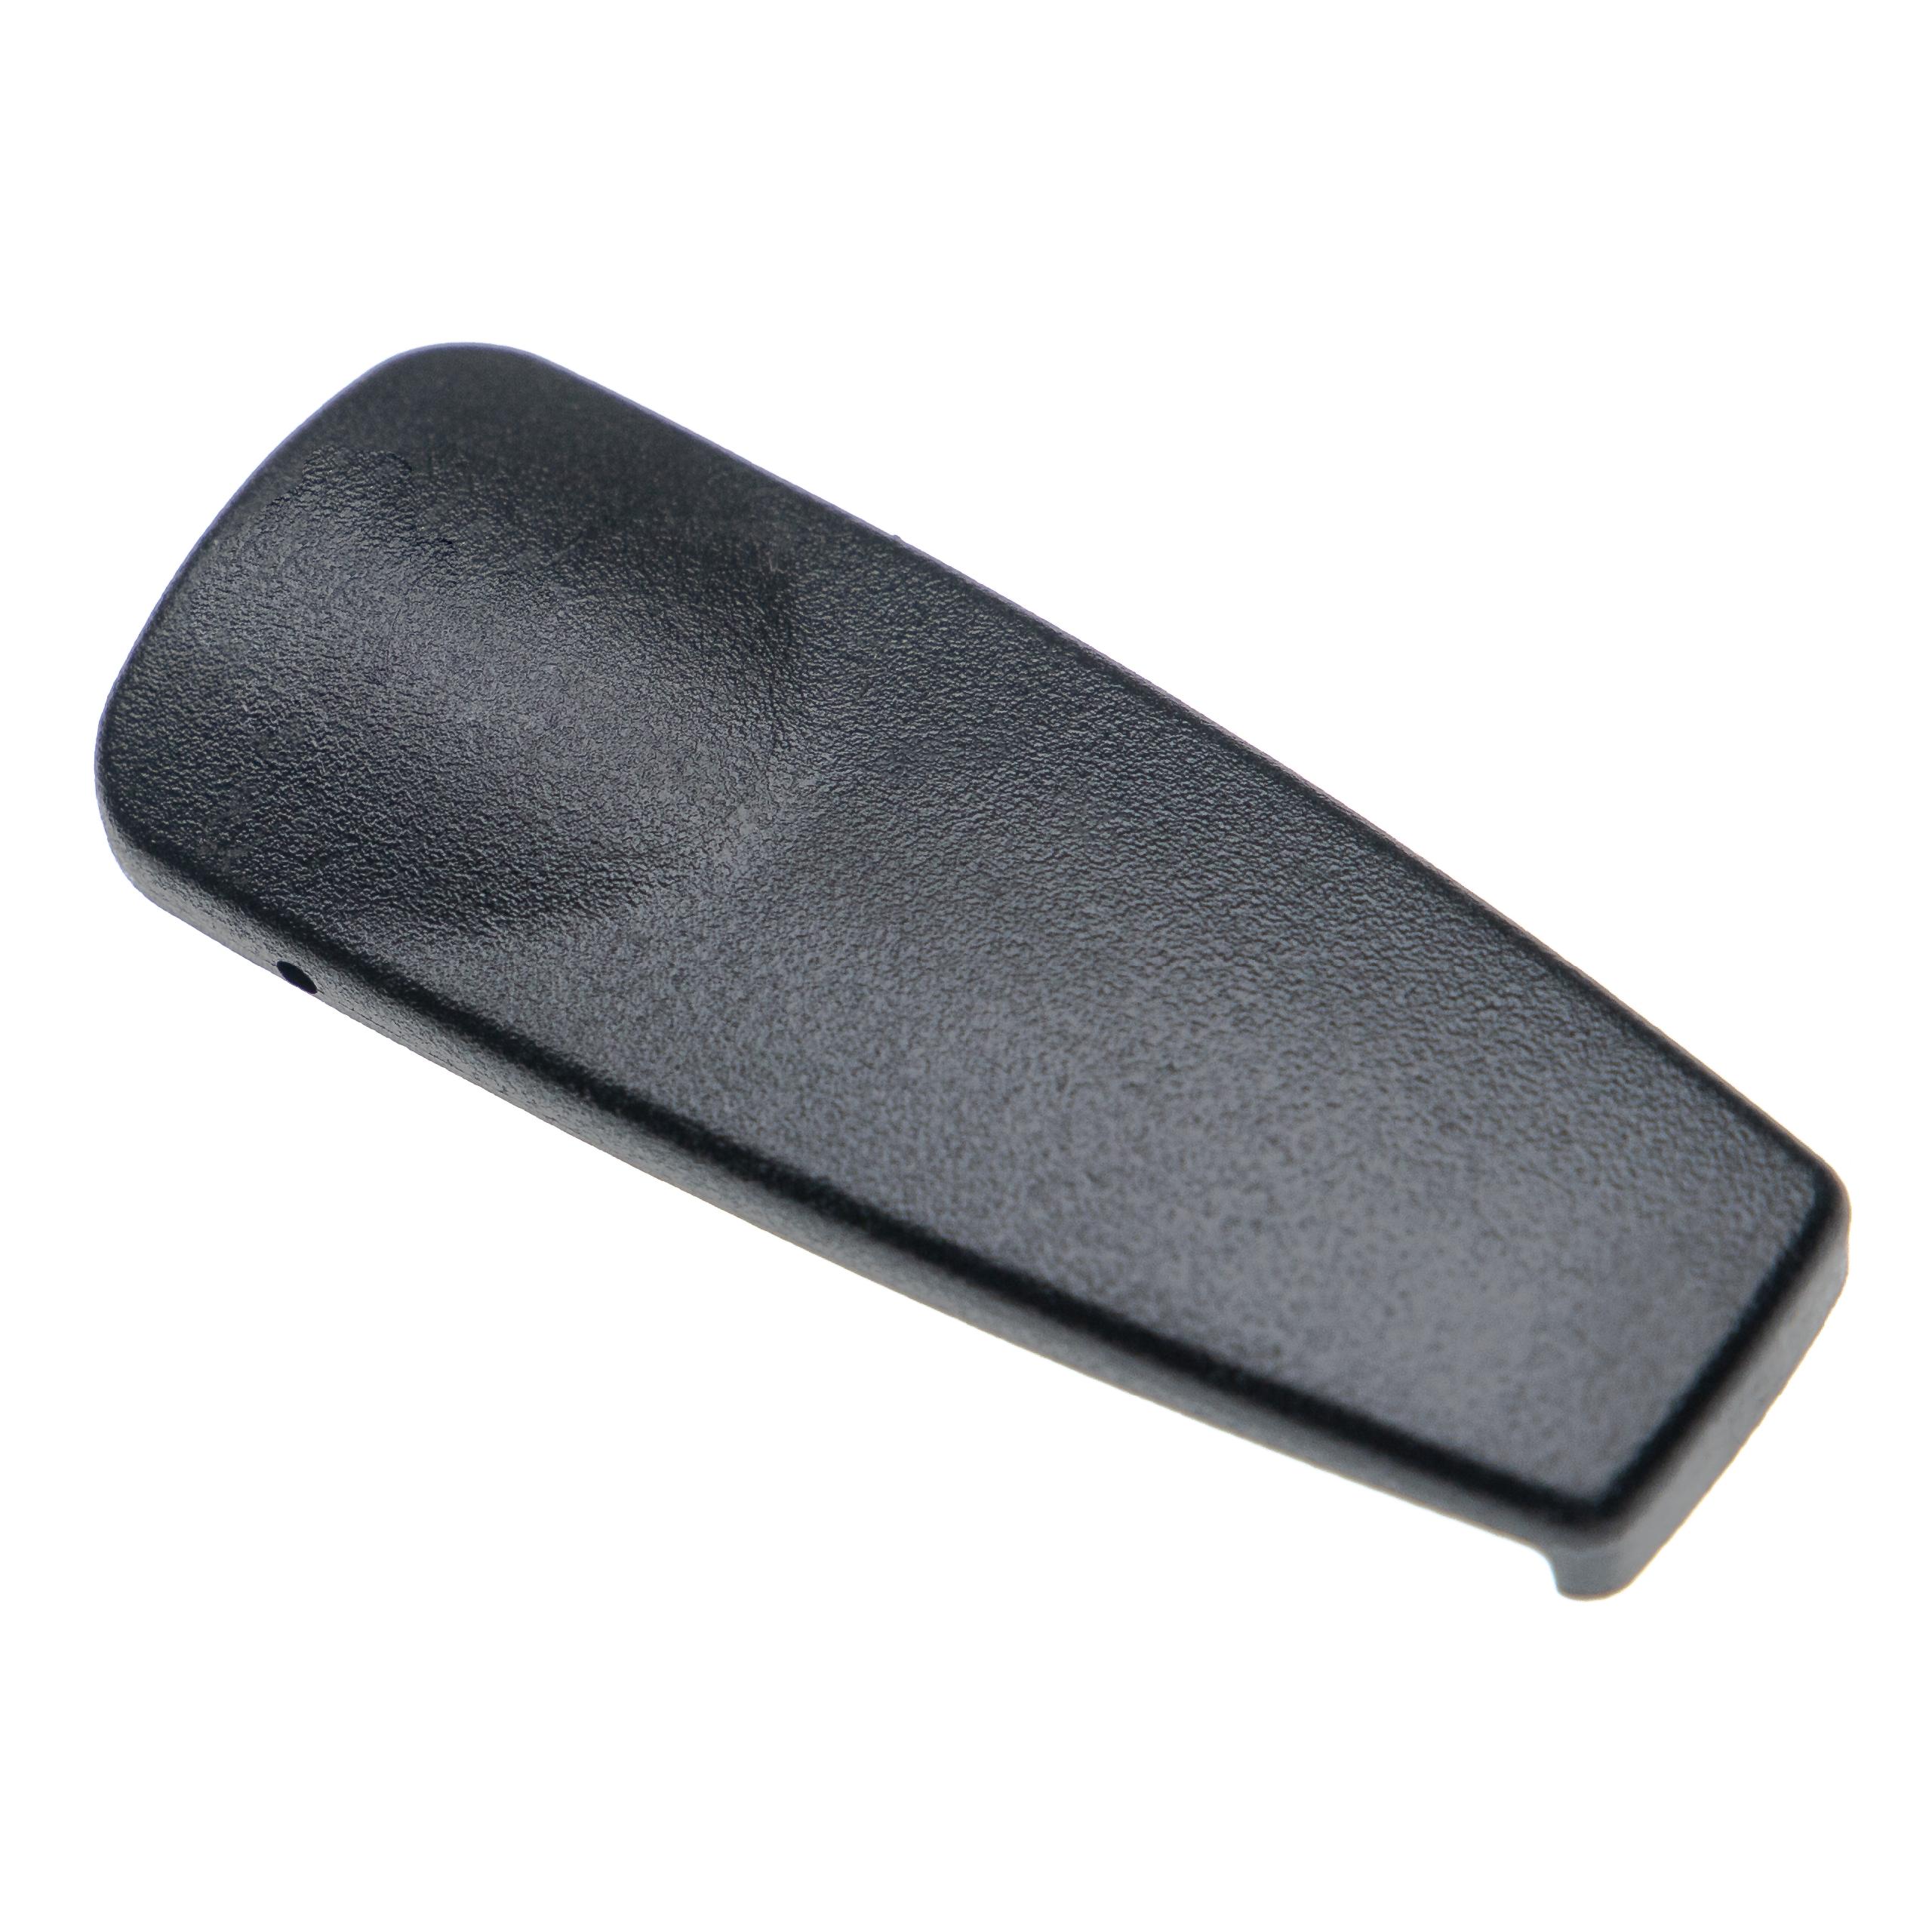 Clip para cinturón para equipos de radio Motorola GP330 - plástico, negro